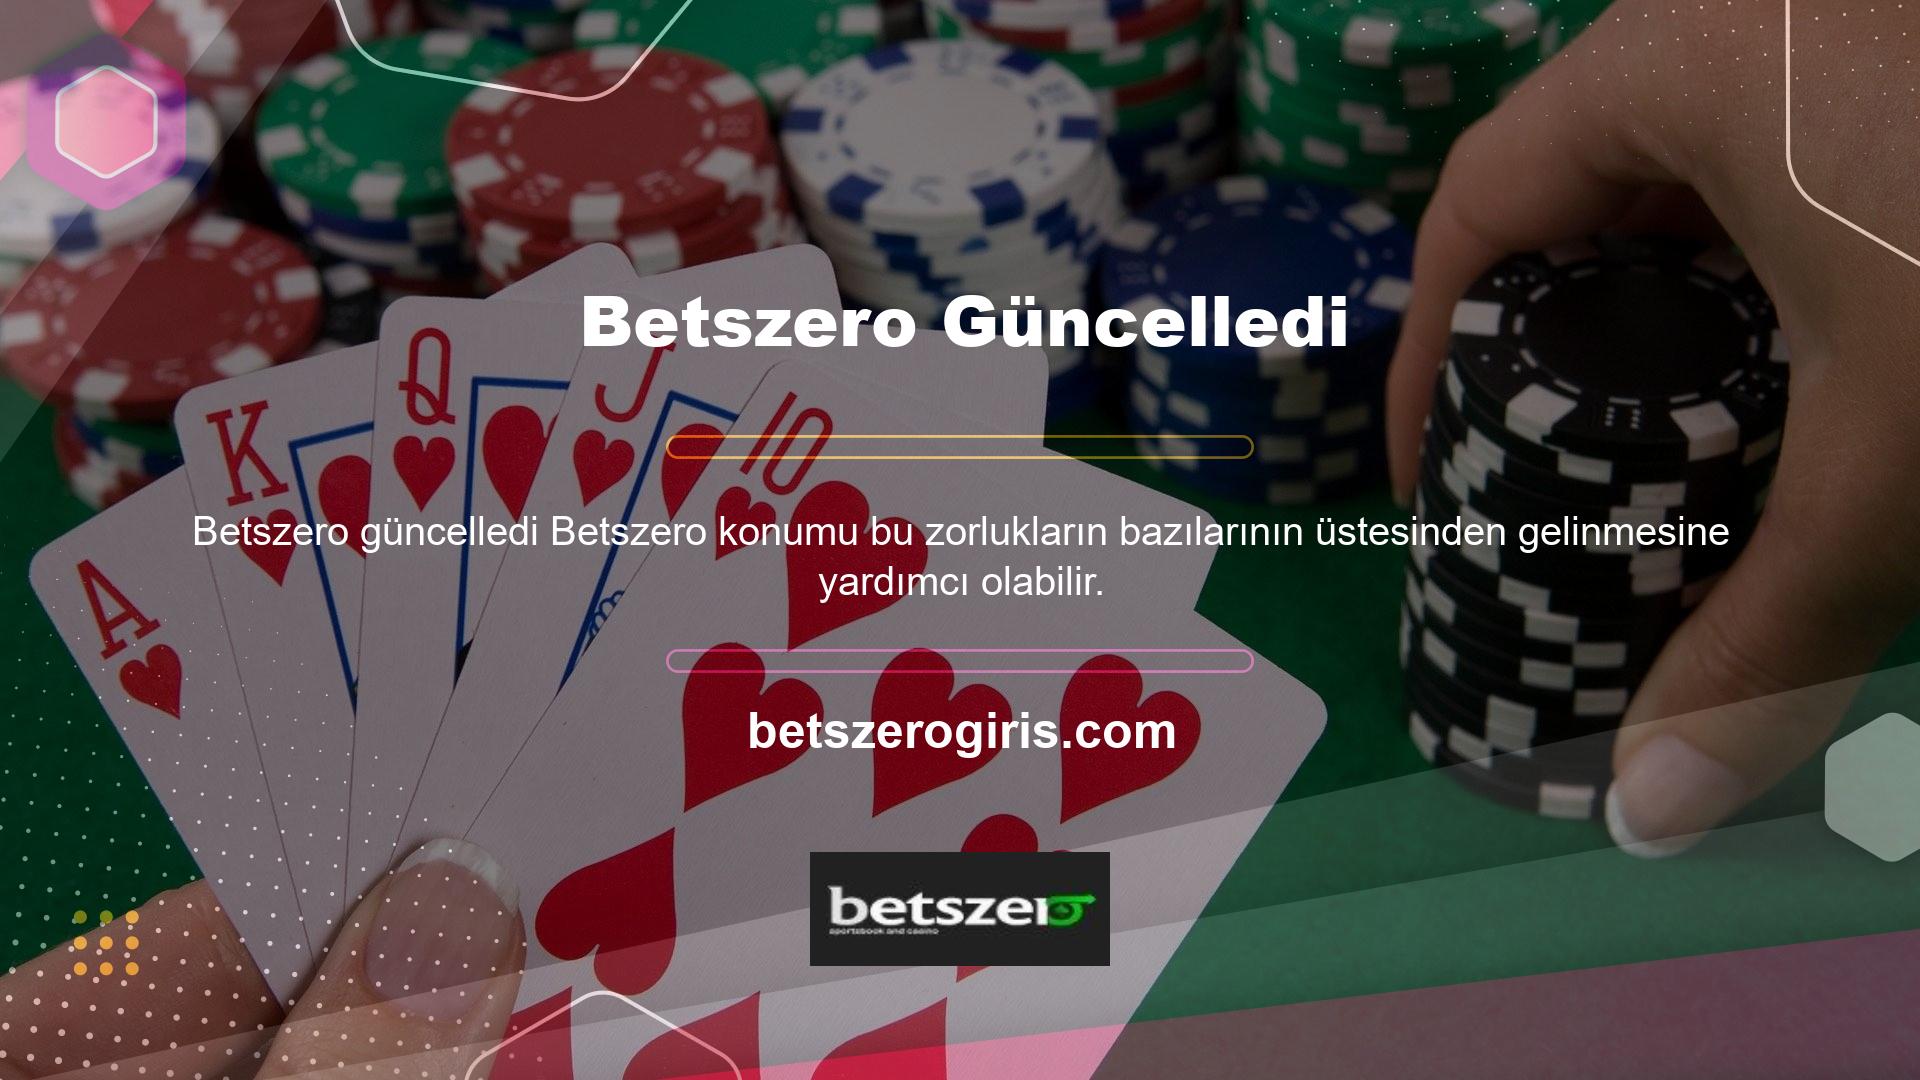 BTK yakın zamanda Betszero hesap koruma ücreti web sitesini engelledi, bu nedenle Betszero giriş adreslerini Betszero